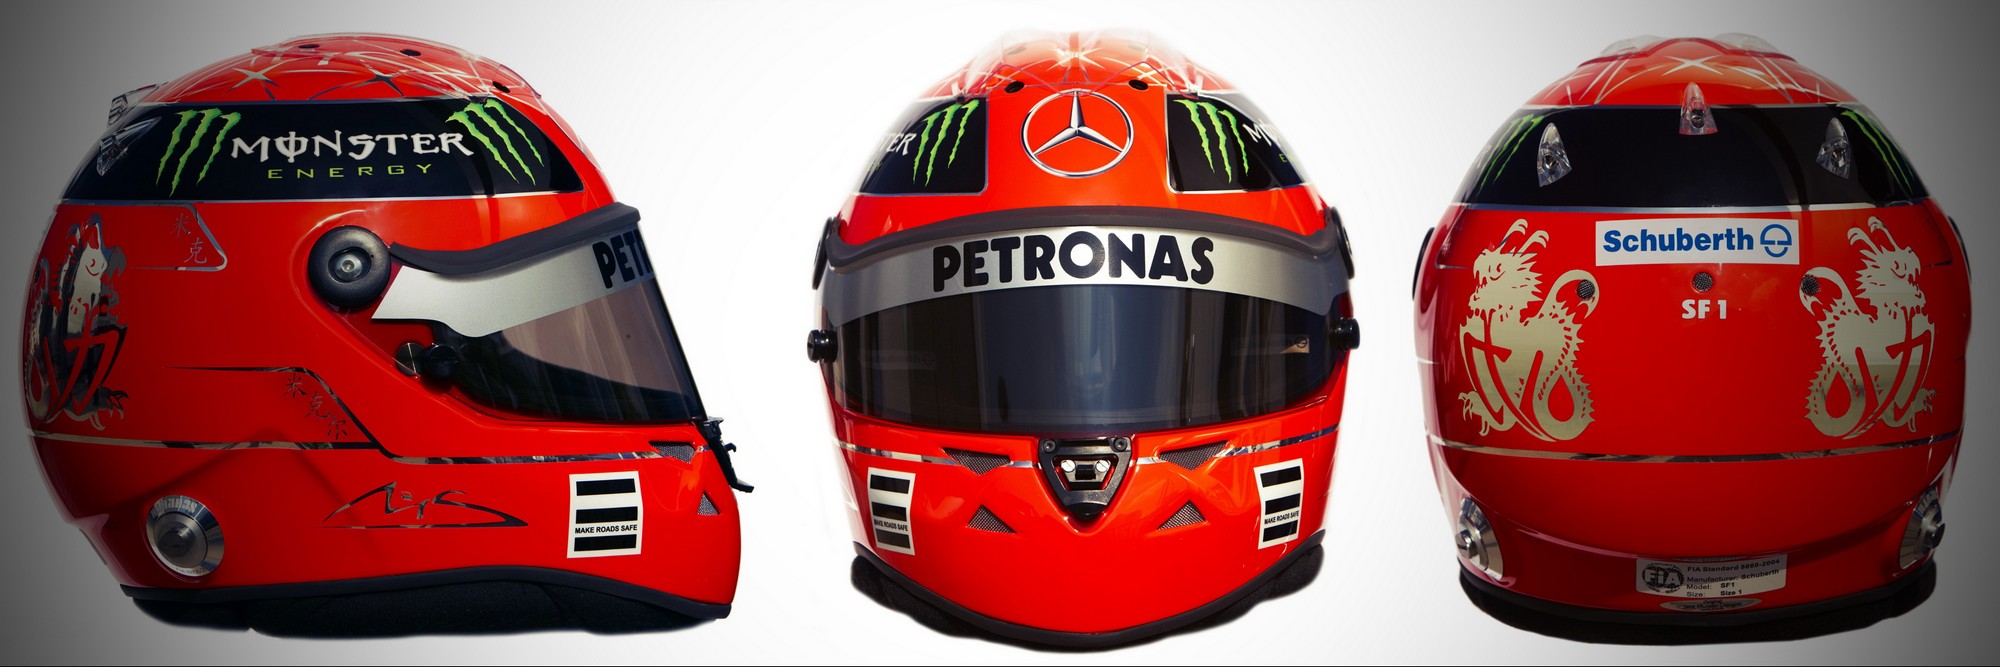 Шлем Михаэля Шумахера на сезон 2011 года | 2011 helmet of Michael Schumacher